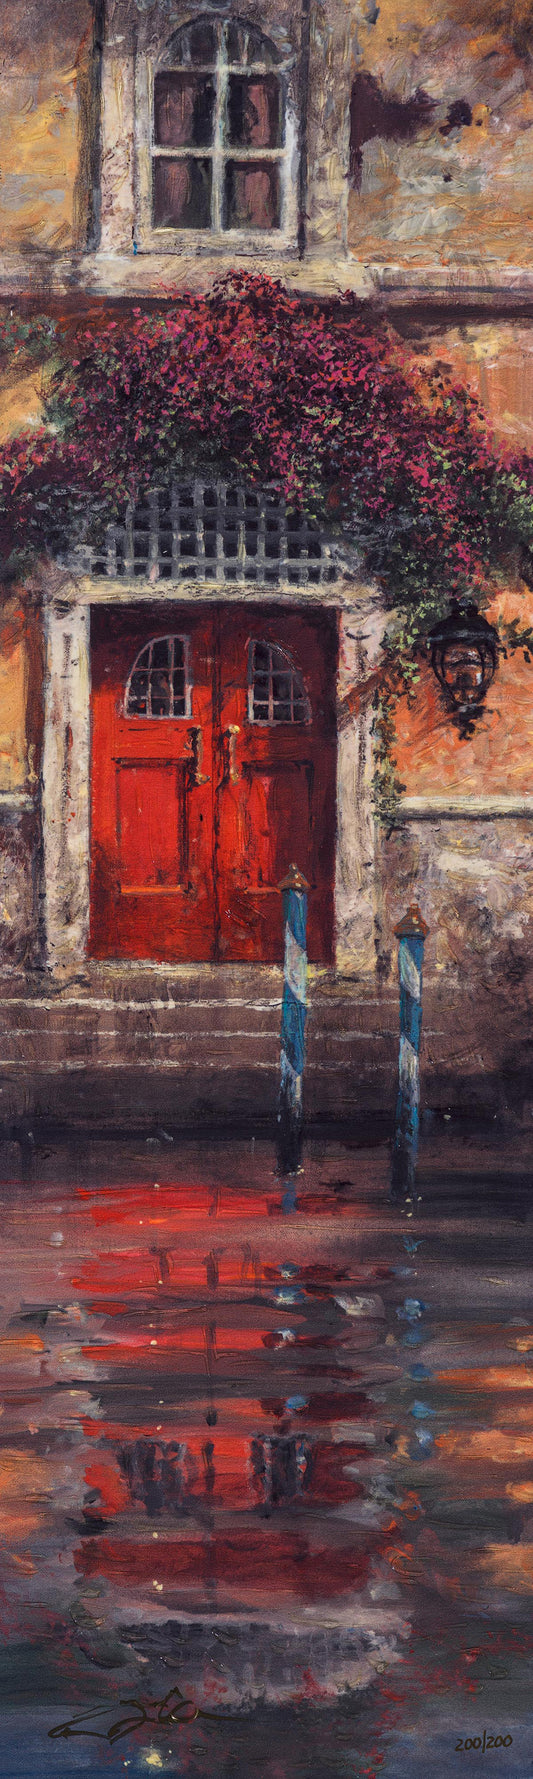 James Coleman - Red Door Reflections (2019)